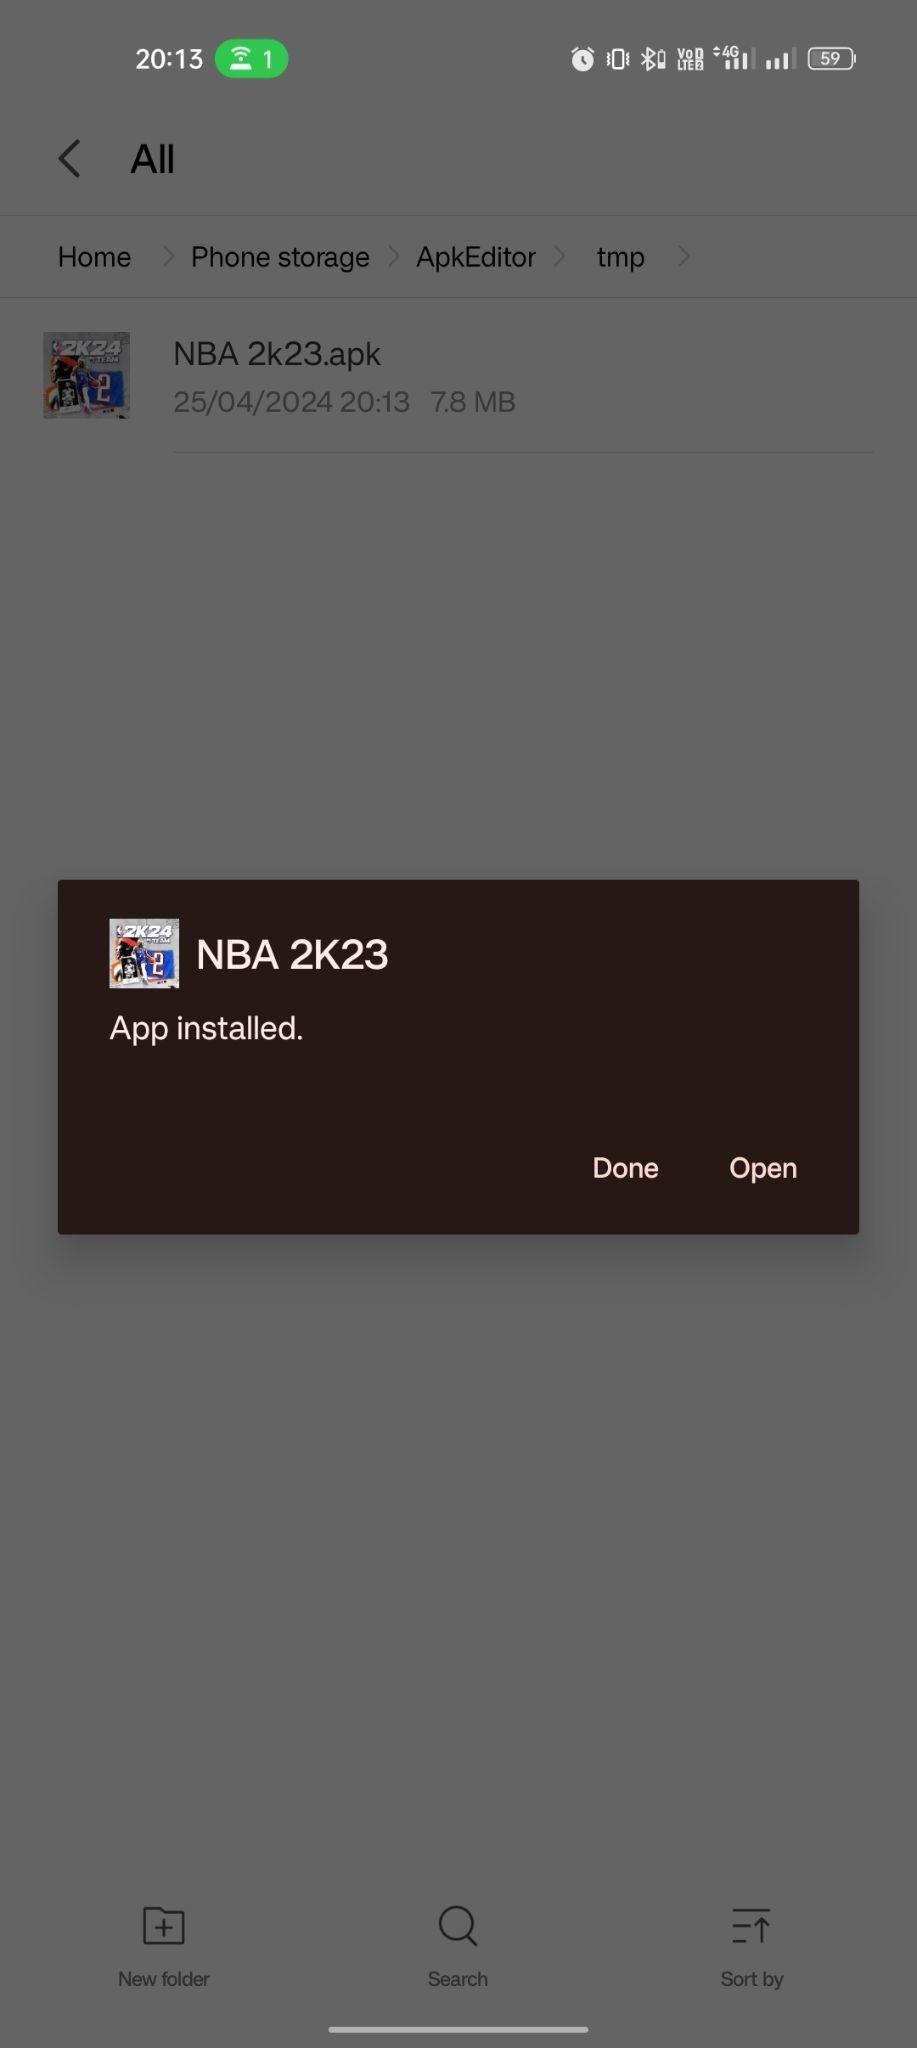 NBA 2K23 apk installed